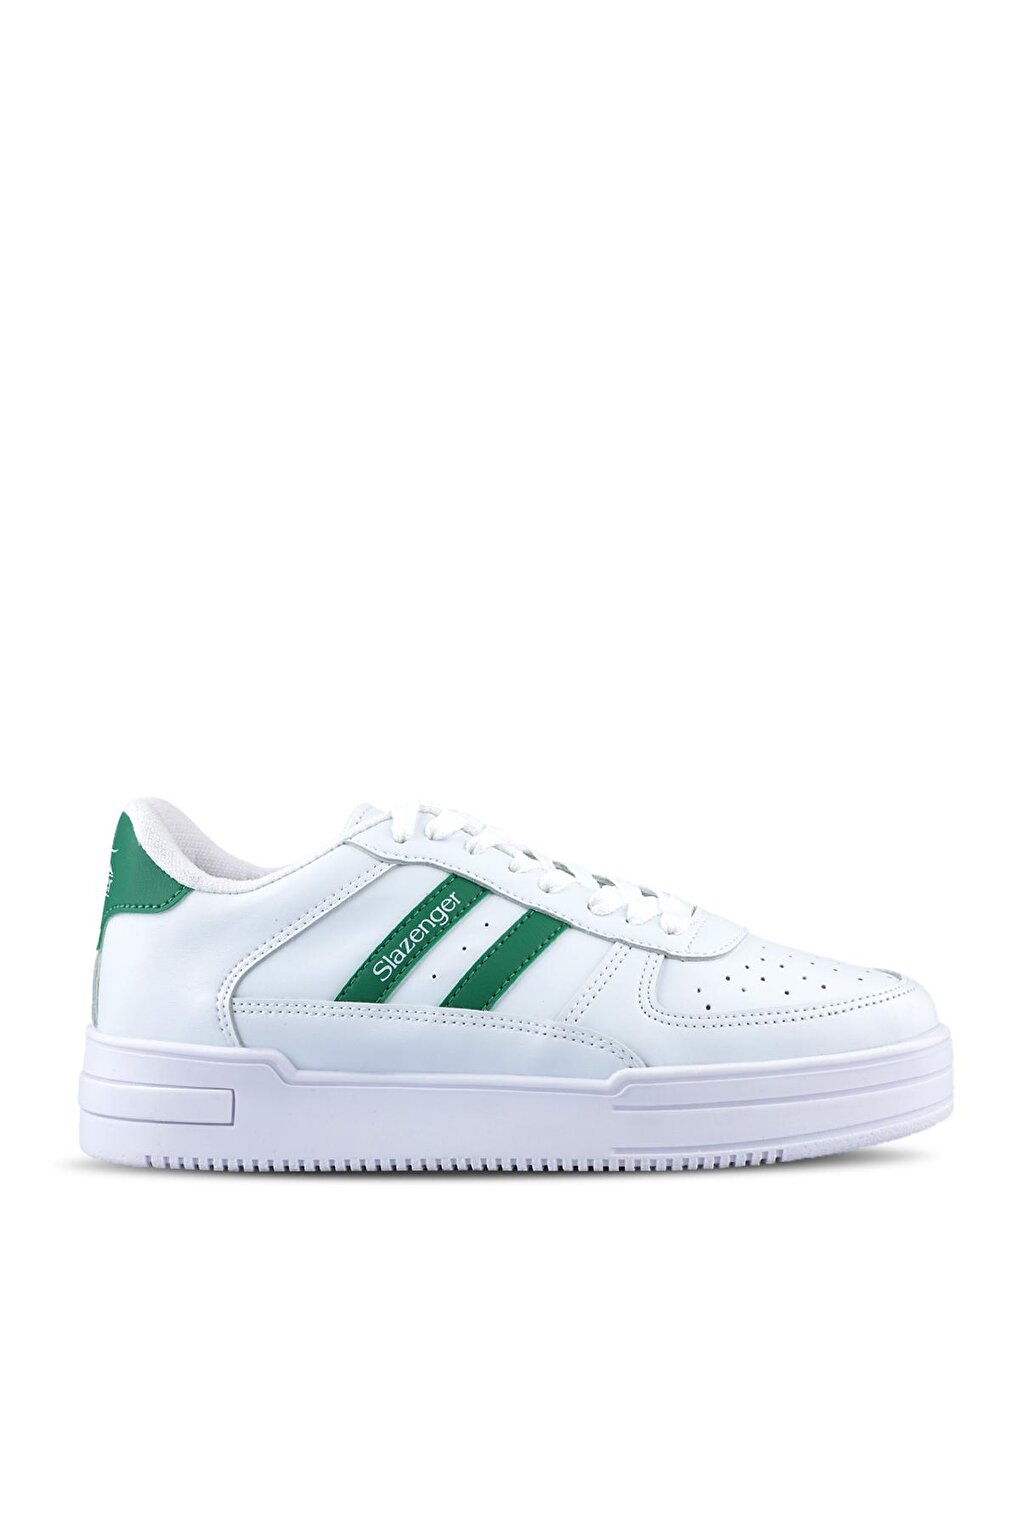 CAMP Sneaker Женская обувь Белый/Зеленый SLAZENGER сибртех 61621 бело зеленый